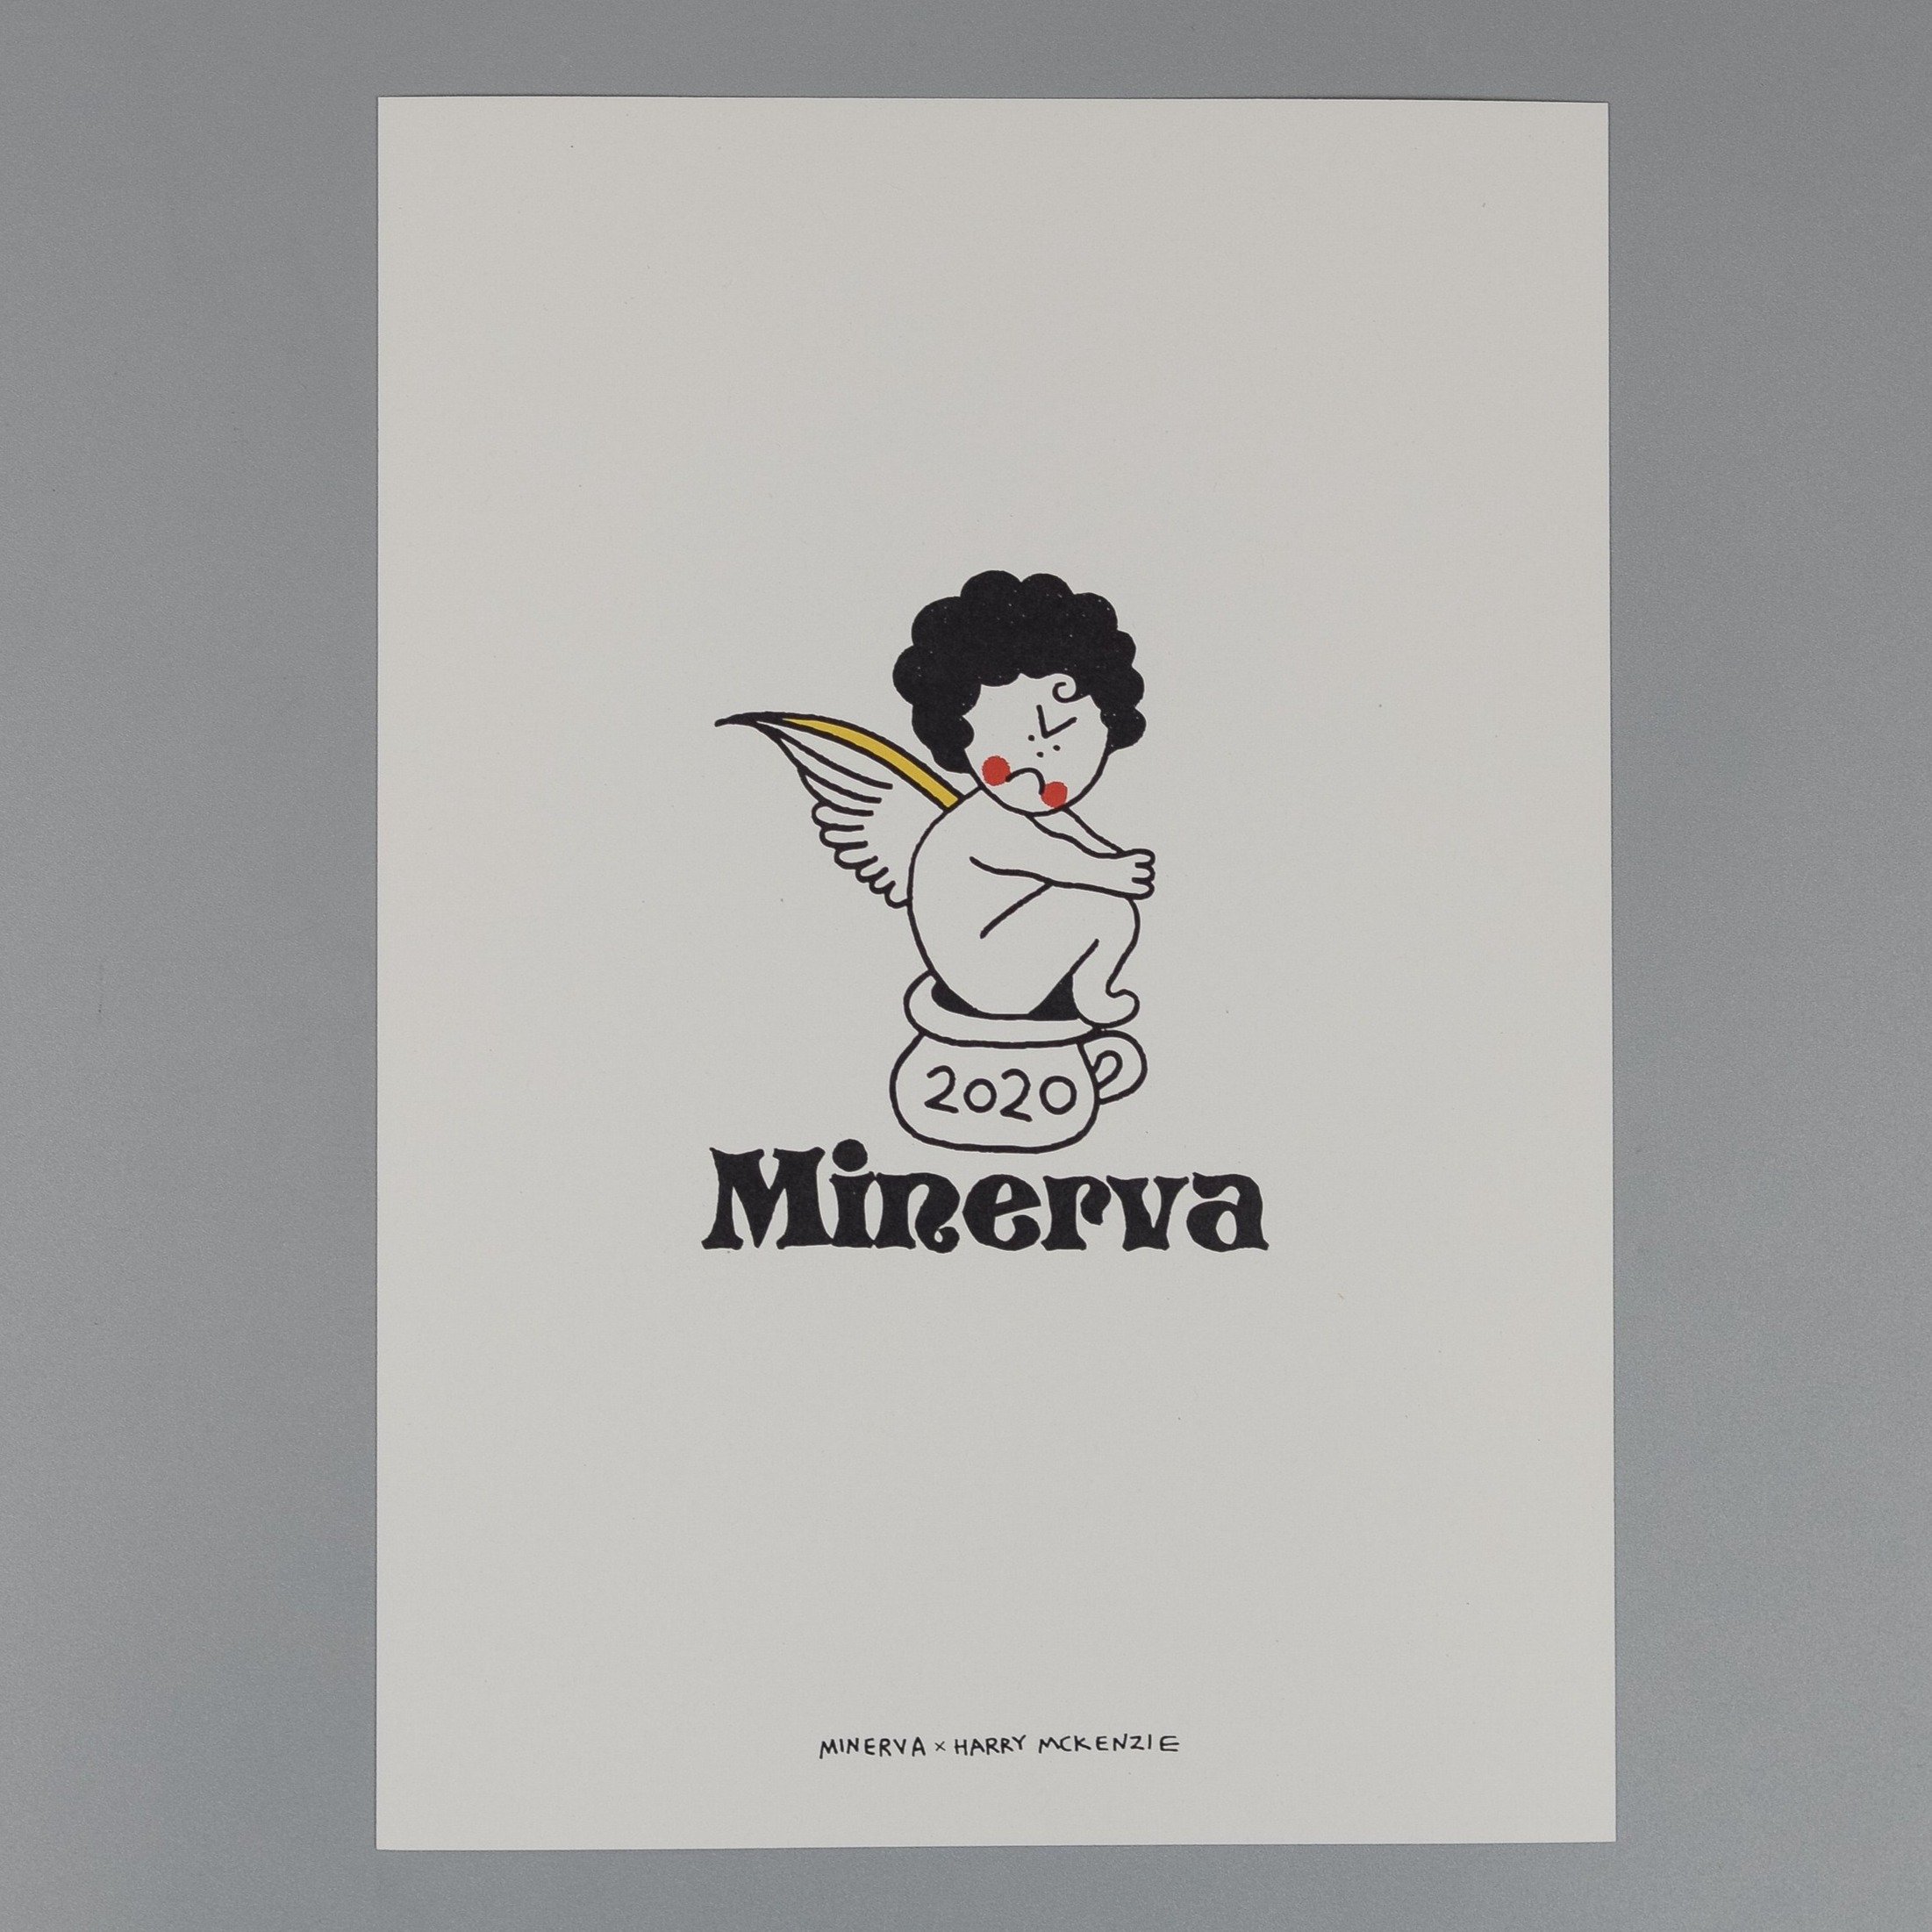 Minerva Cherub Print